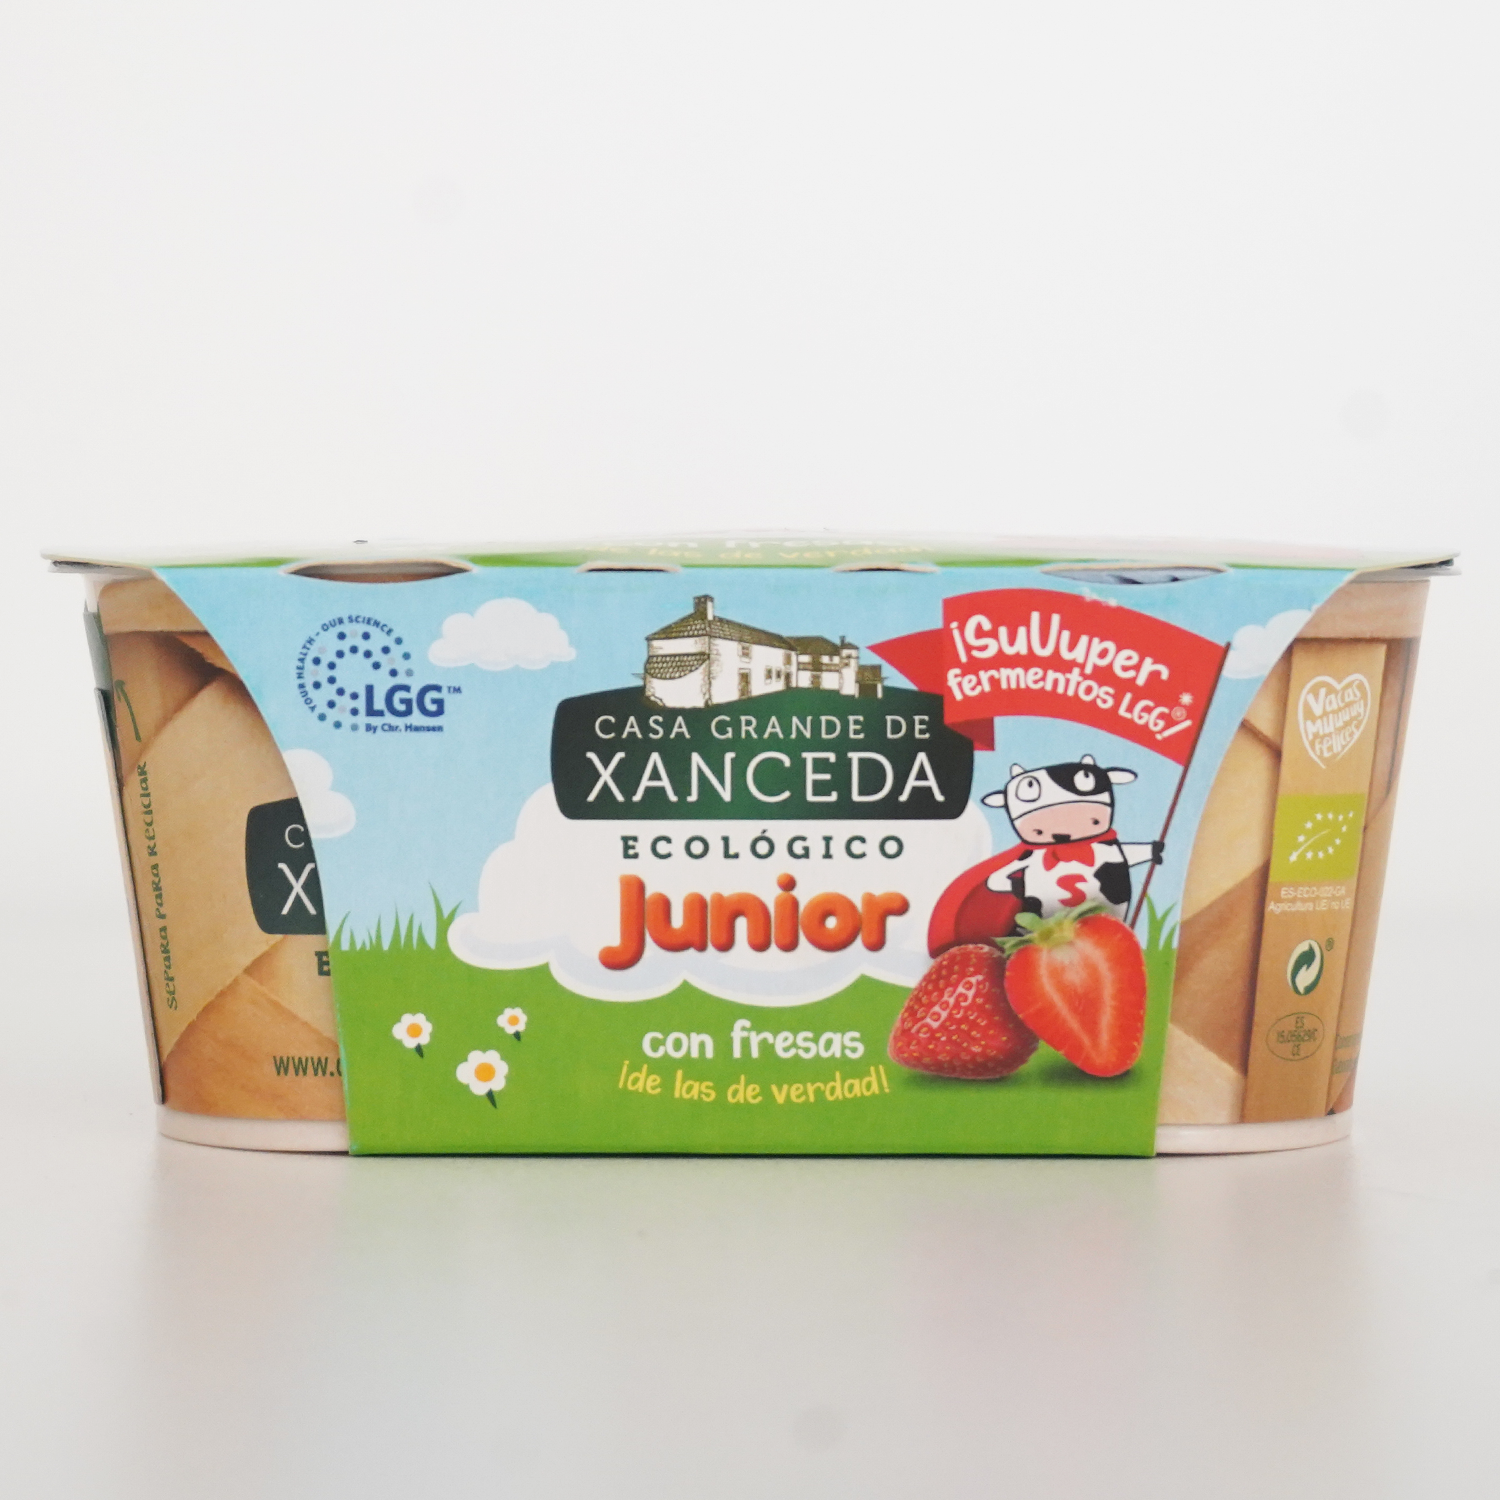 Pack de dos yogures junior con fresas ecológicos de la marca xanceda